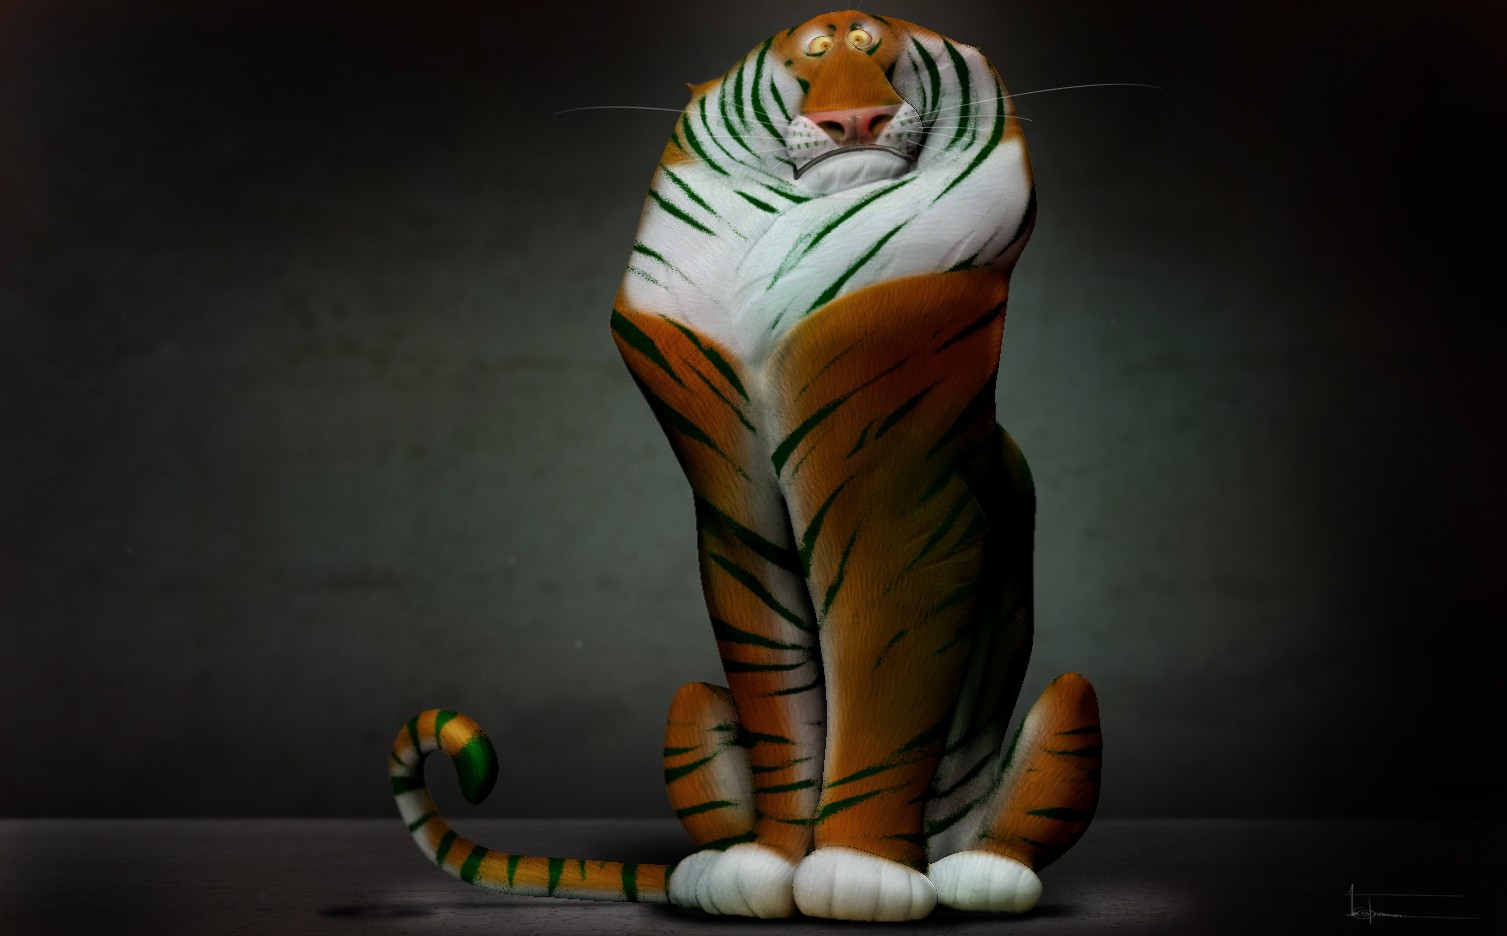 Wallpaper, tiger, cartoon, 3D, animals 1507x936